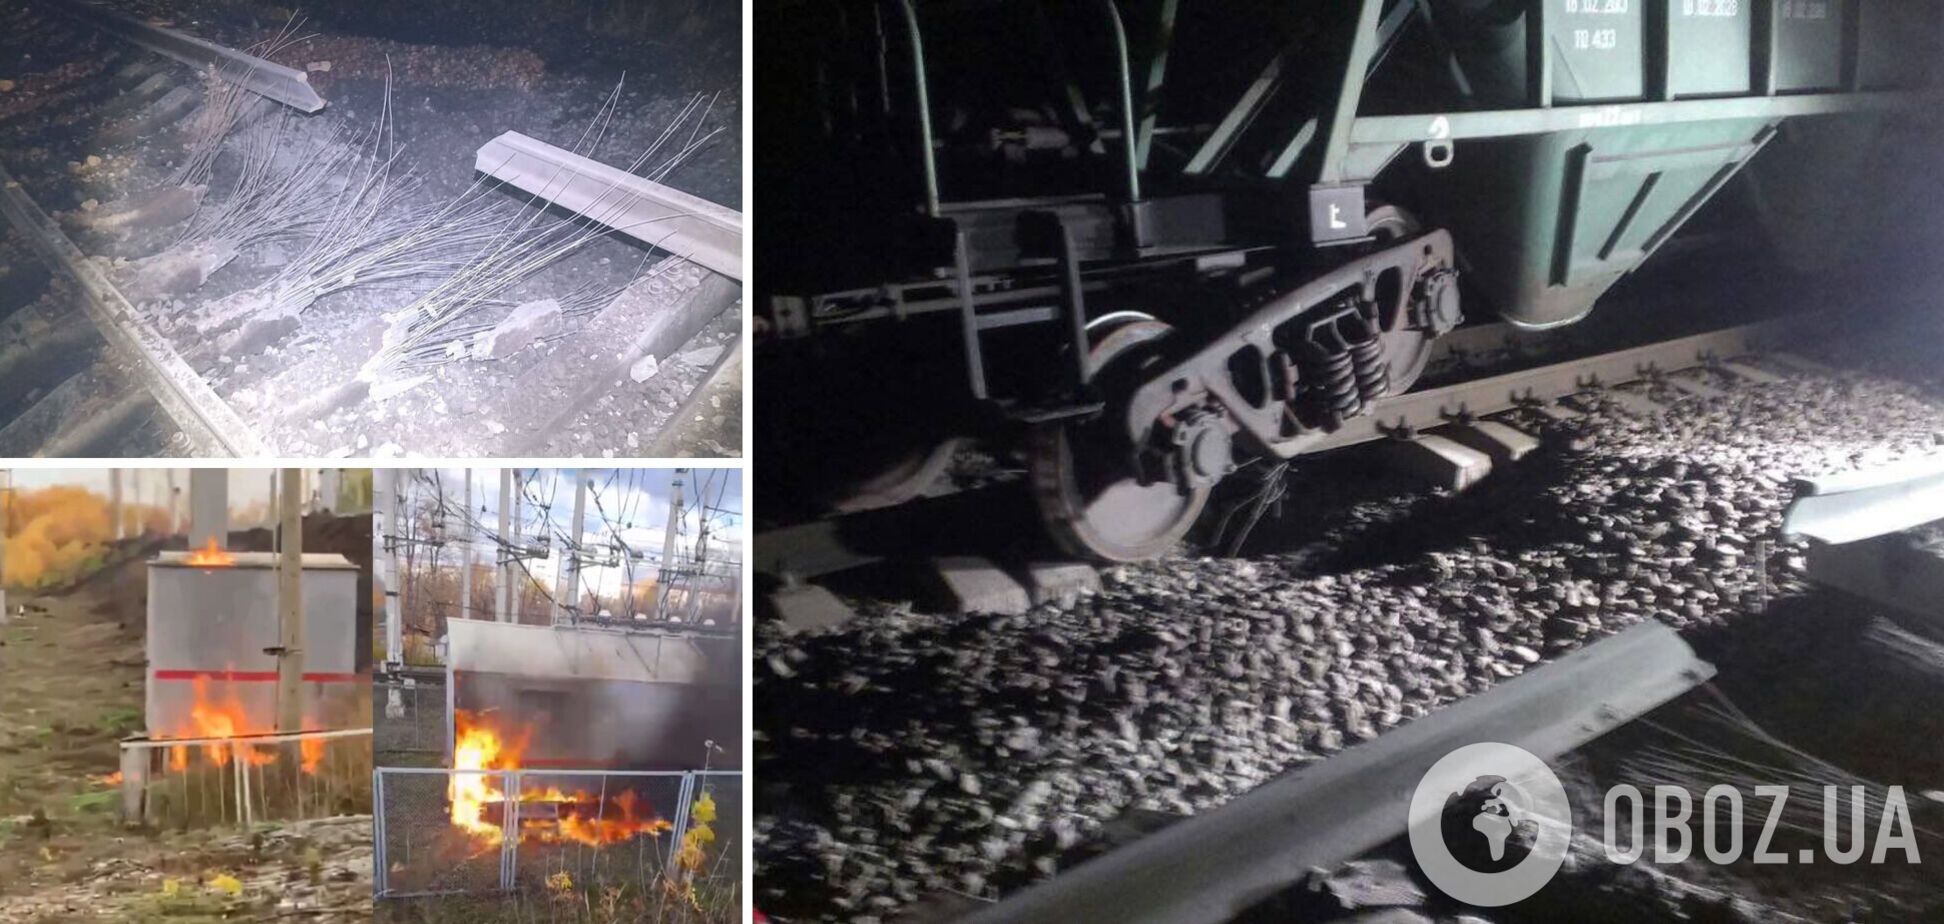 В Брянской области российские партизаны устроили взрыв на железной дороге, а в Башкортостане сожгли релейный шкаф. Фото